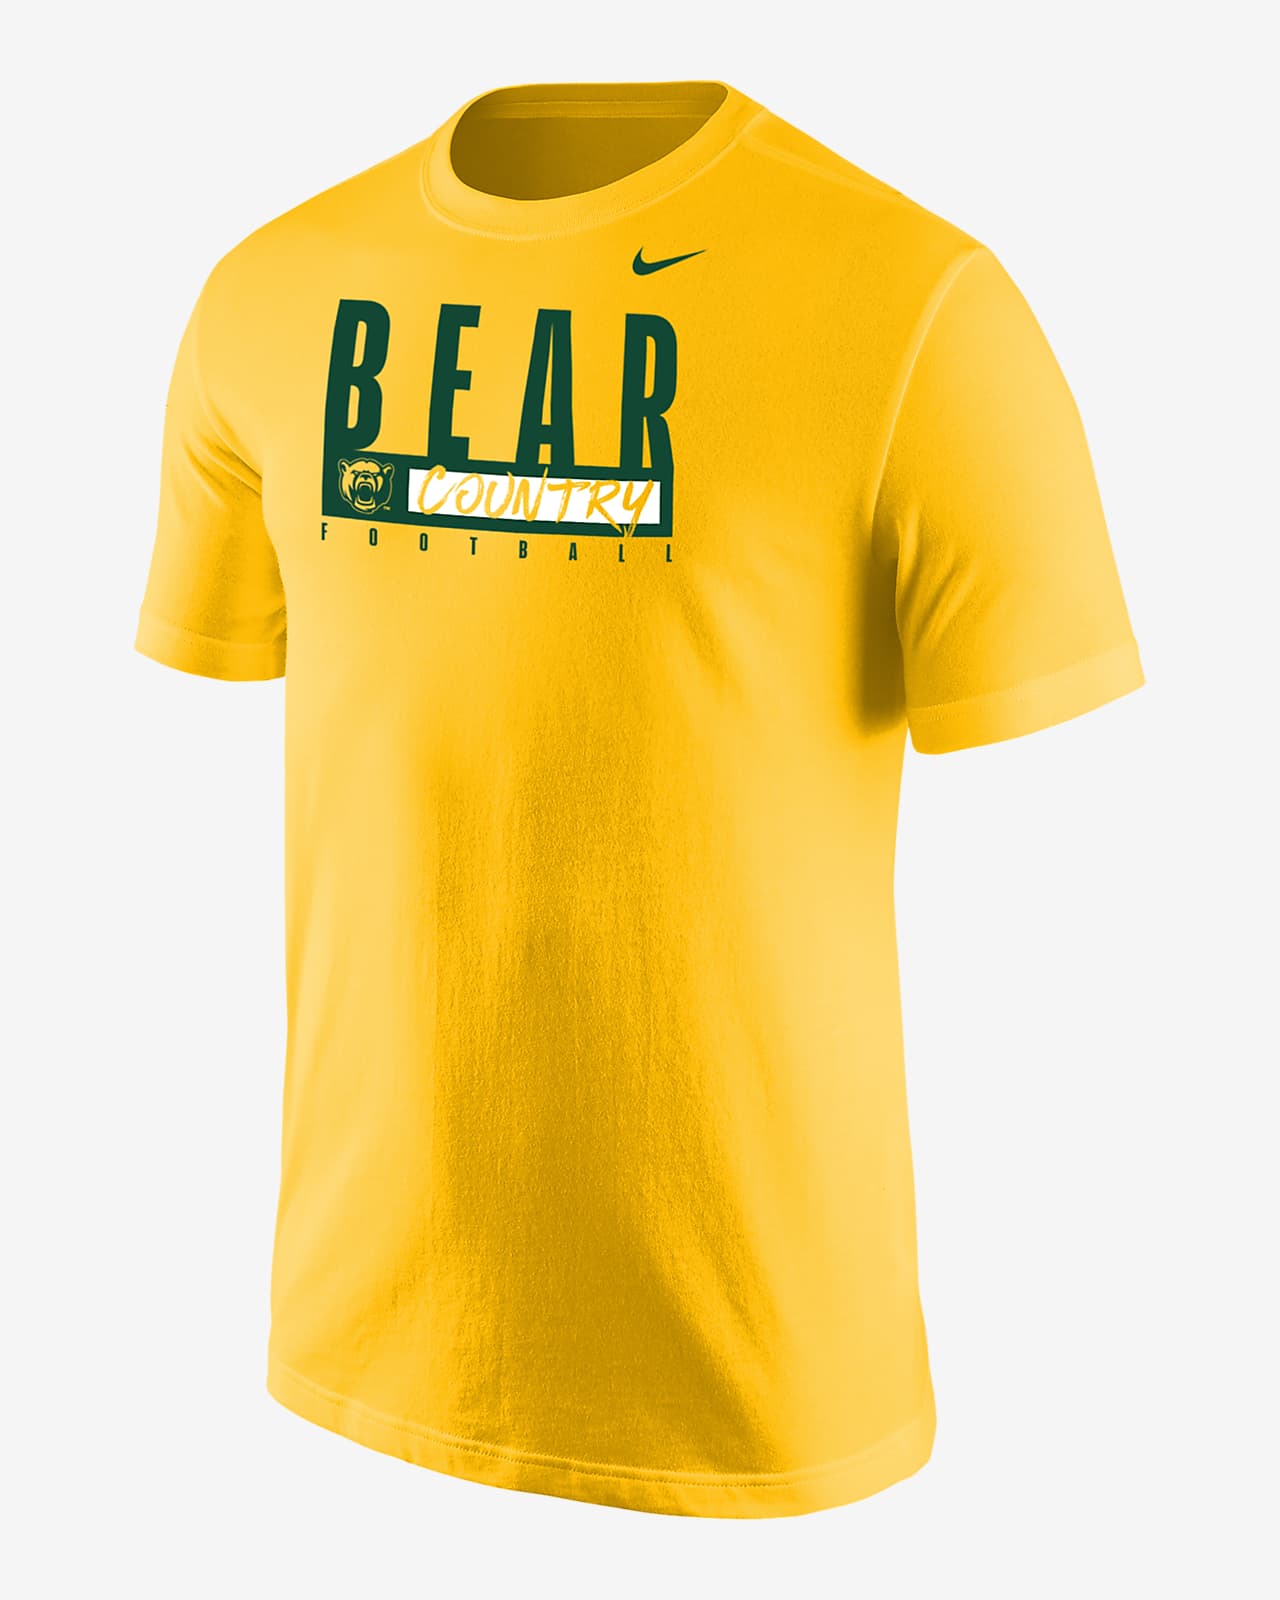 Baylor Men's Nike College T-Shirt